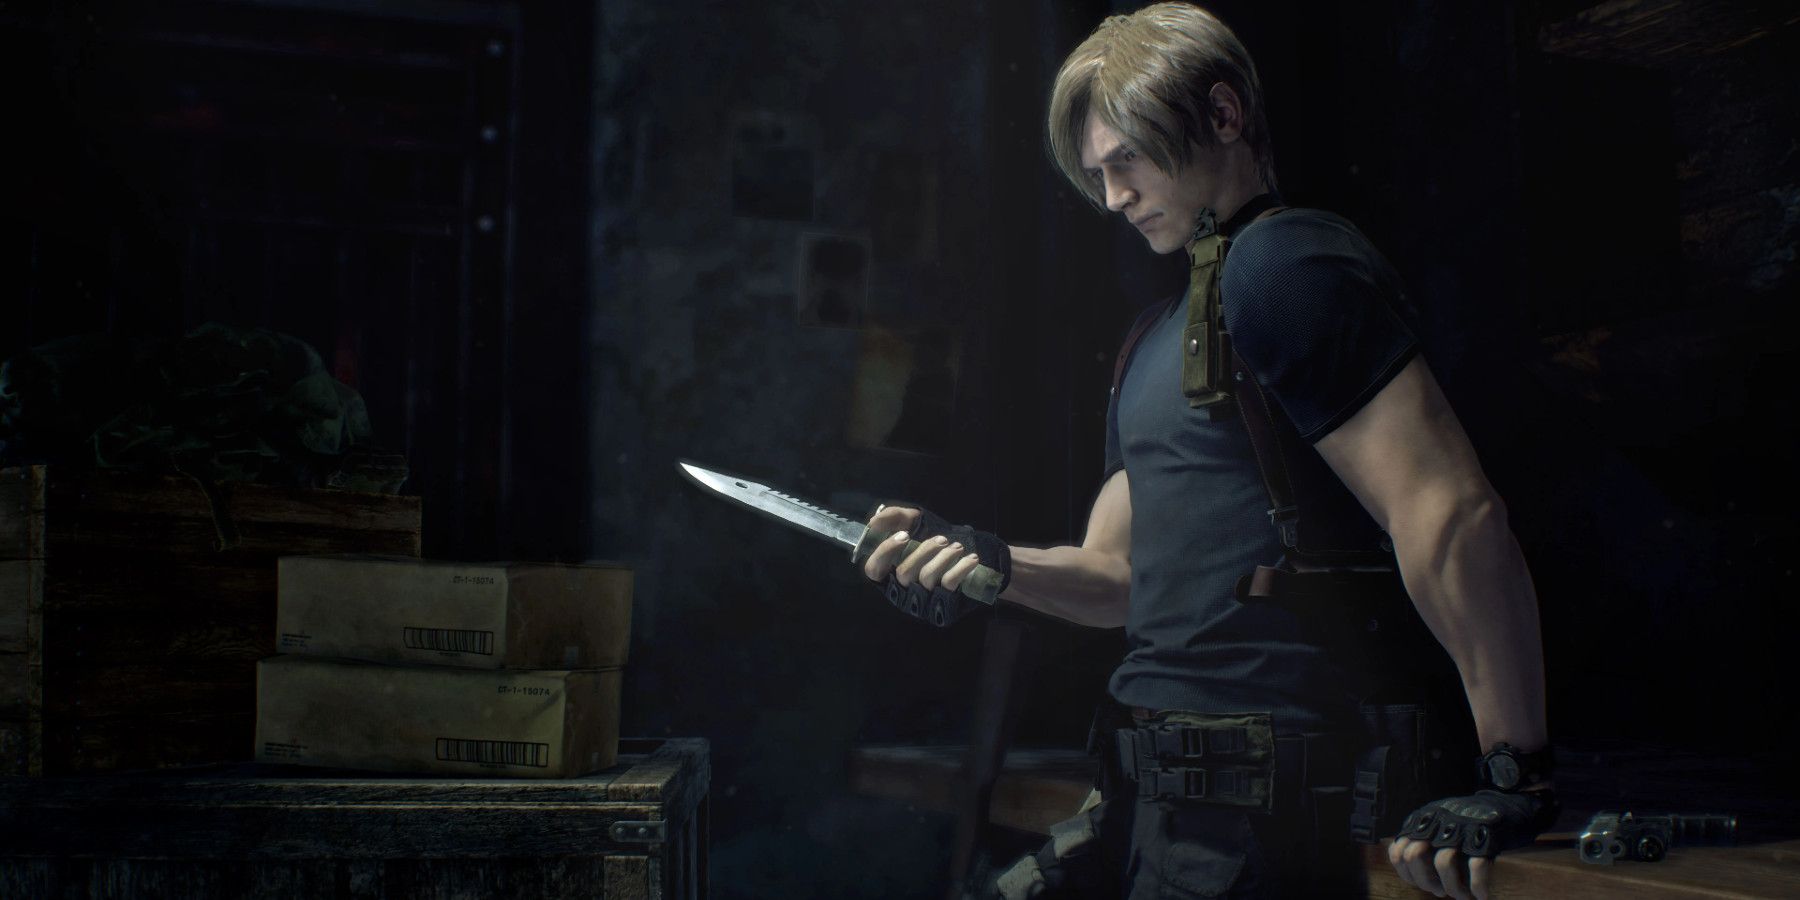 Krauser's knife from Resident Evil 4! : r/knives